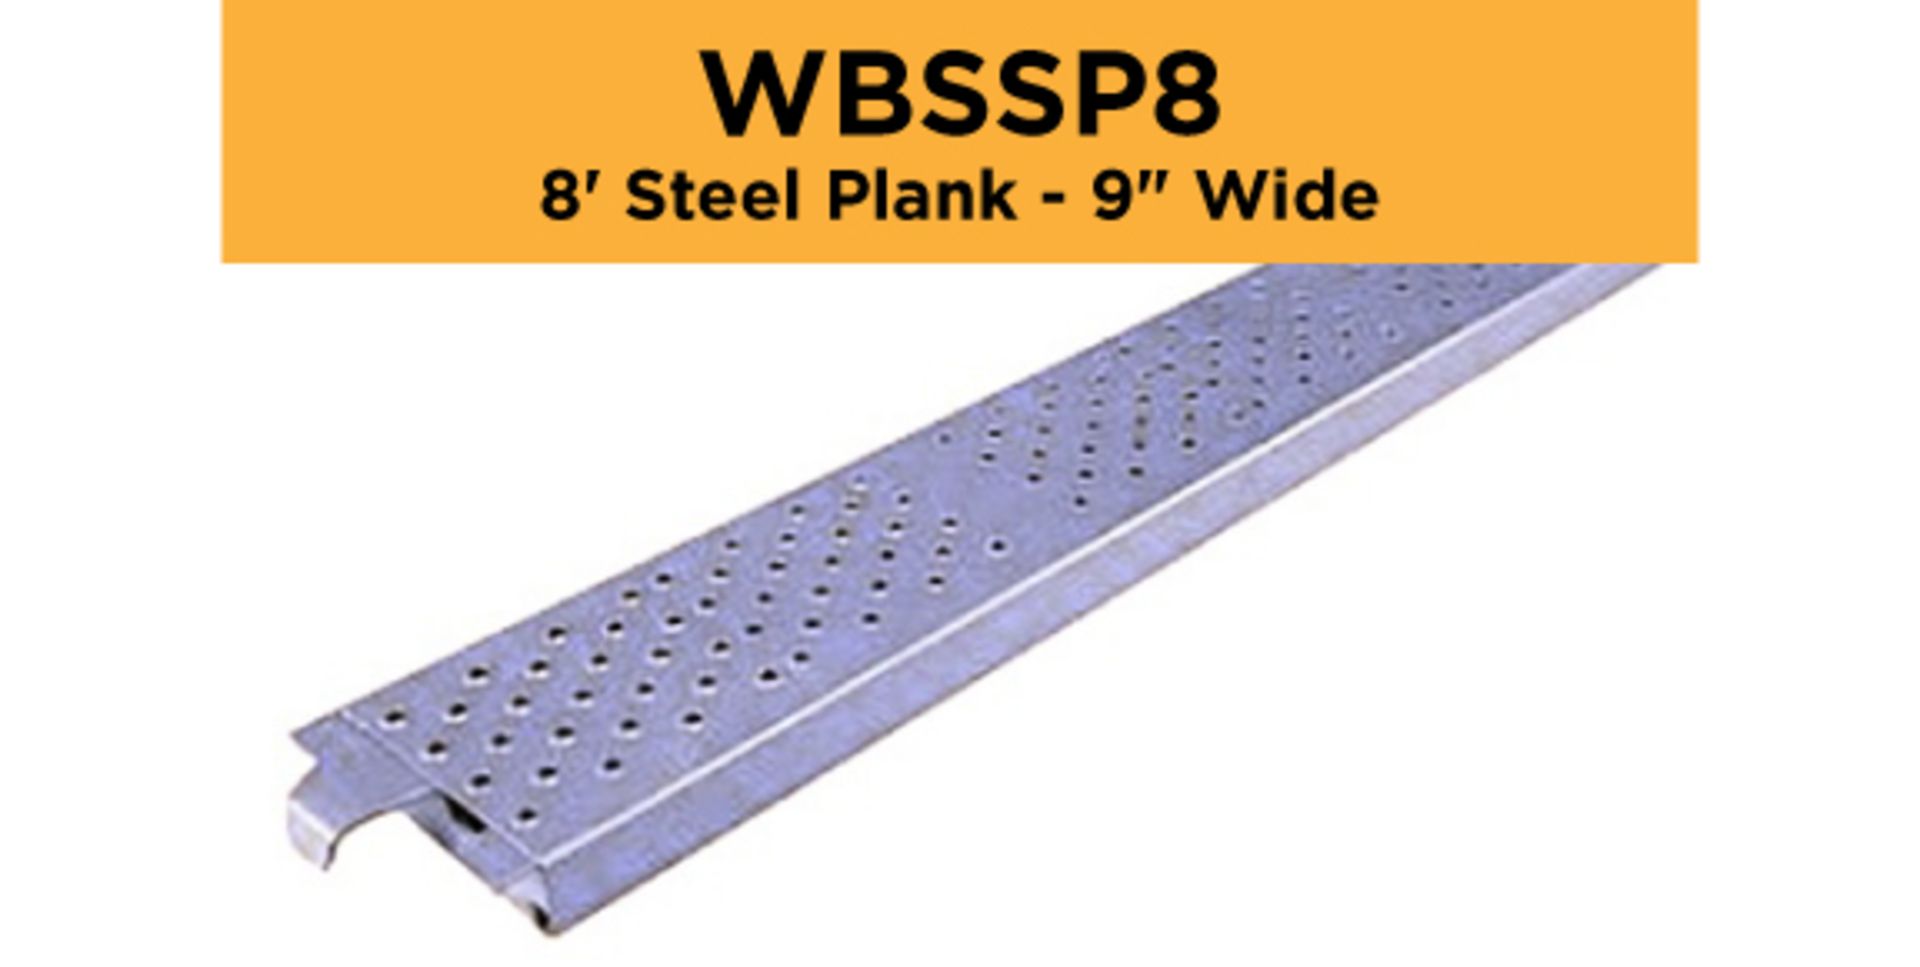 Lot of (256) 8' Steel Plank - 9" Wide - Bay Length 96" (2.44M); Type: WBSSP8 - (4) Racks Per Lot -